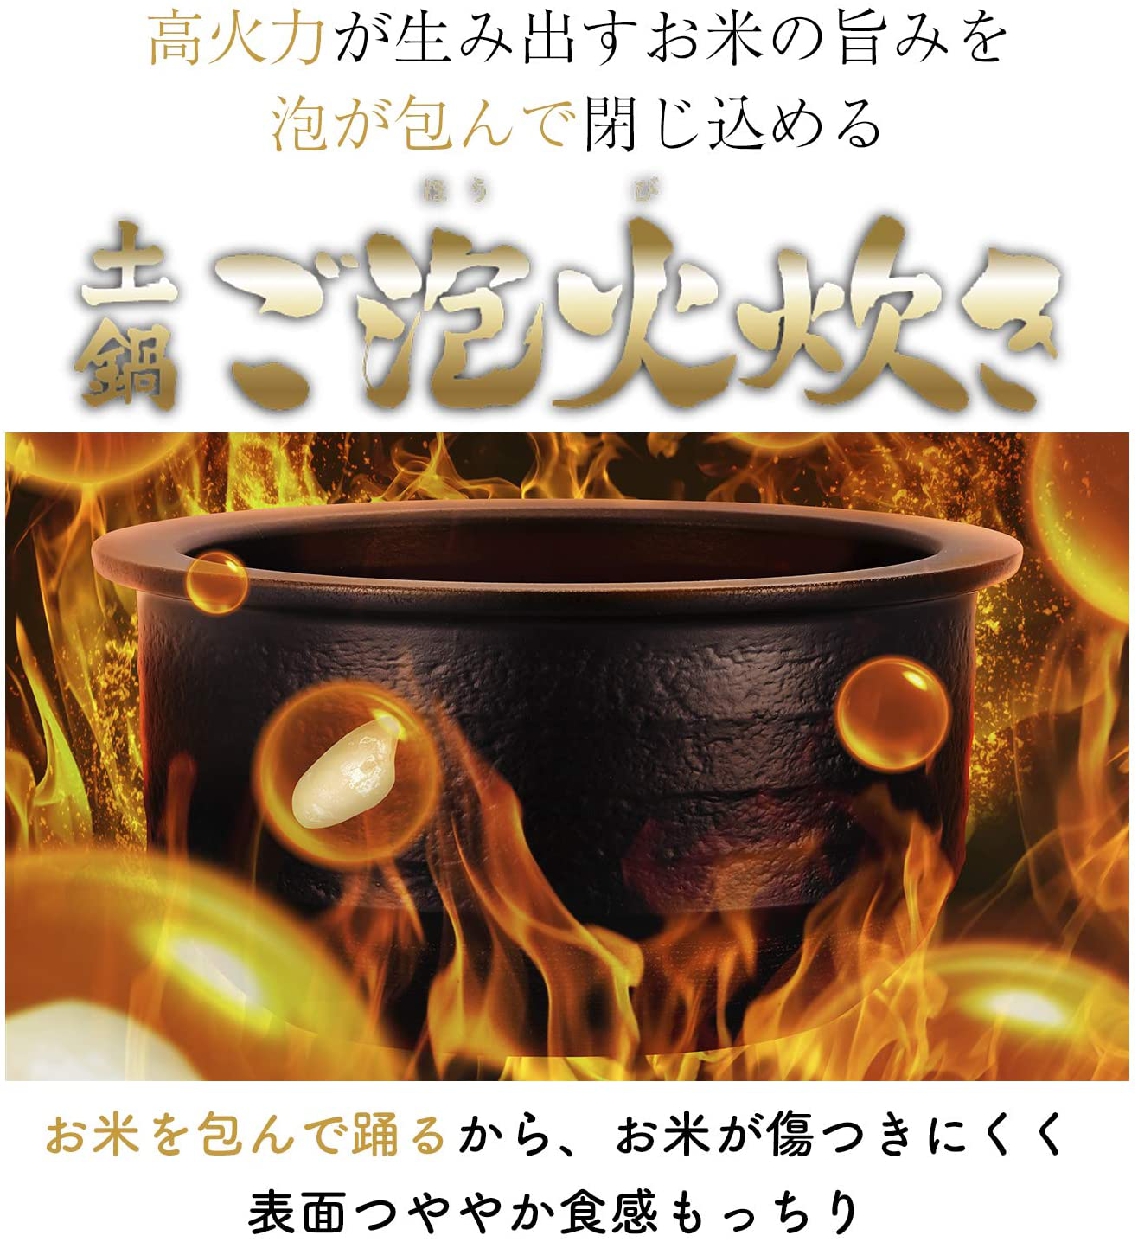 タイガー魔法瓶(TIGER) 土鍋圧力IHジャー炊飯器 JPG-S100の商品画像サムネ4 